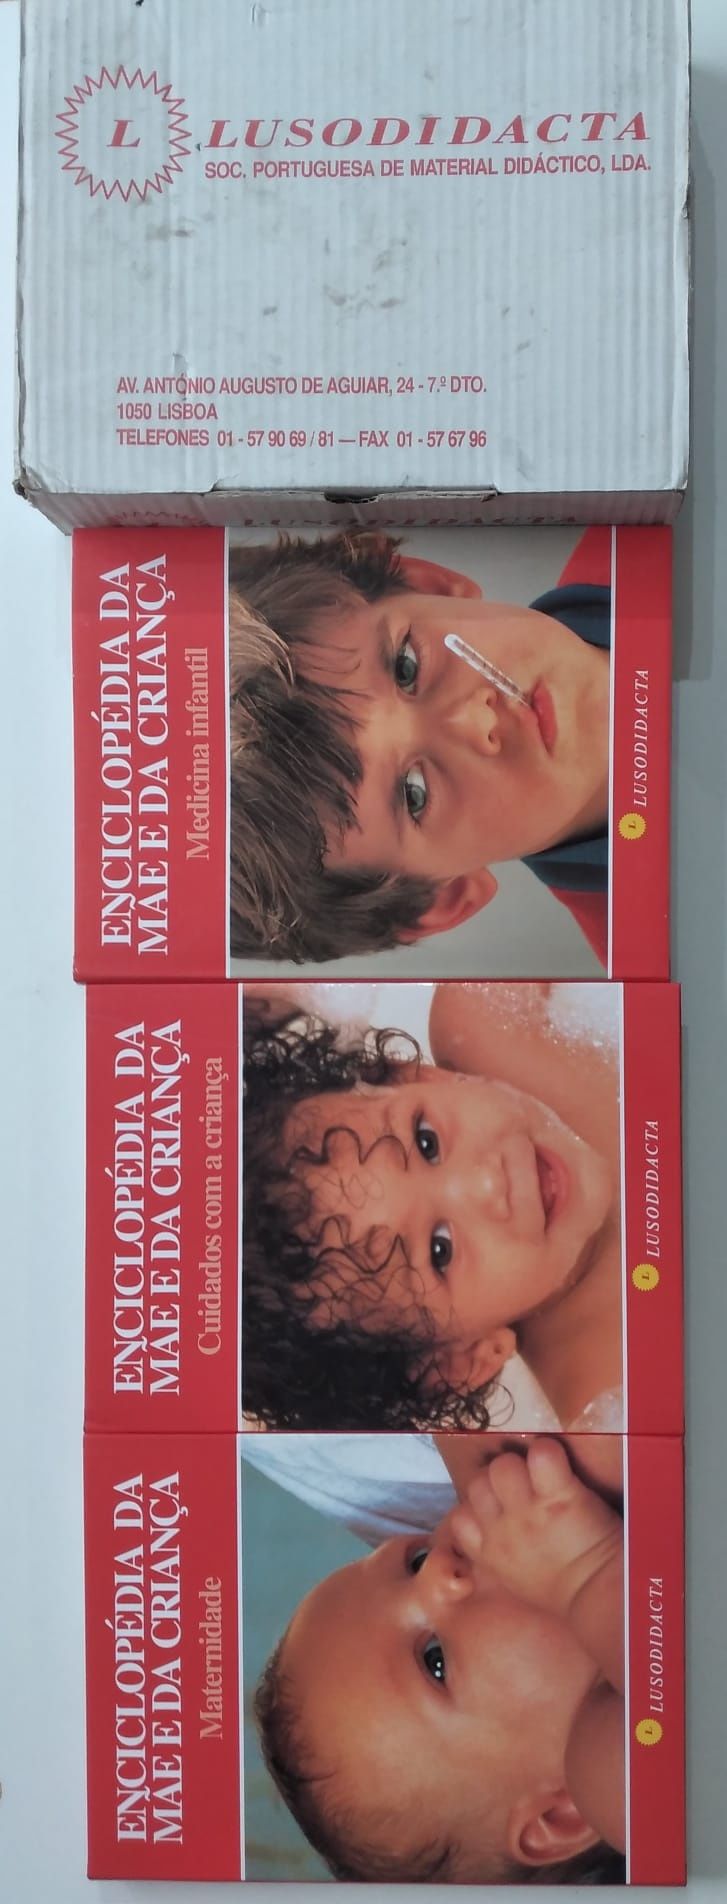 Enciclopédia da Mãe e da Criança - 3 livros novos